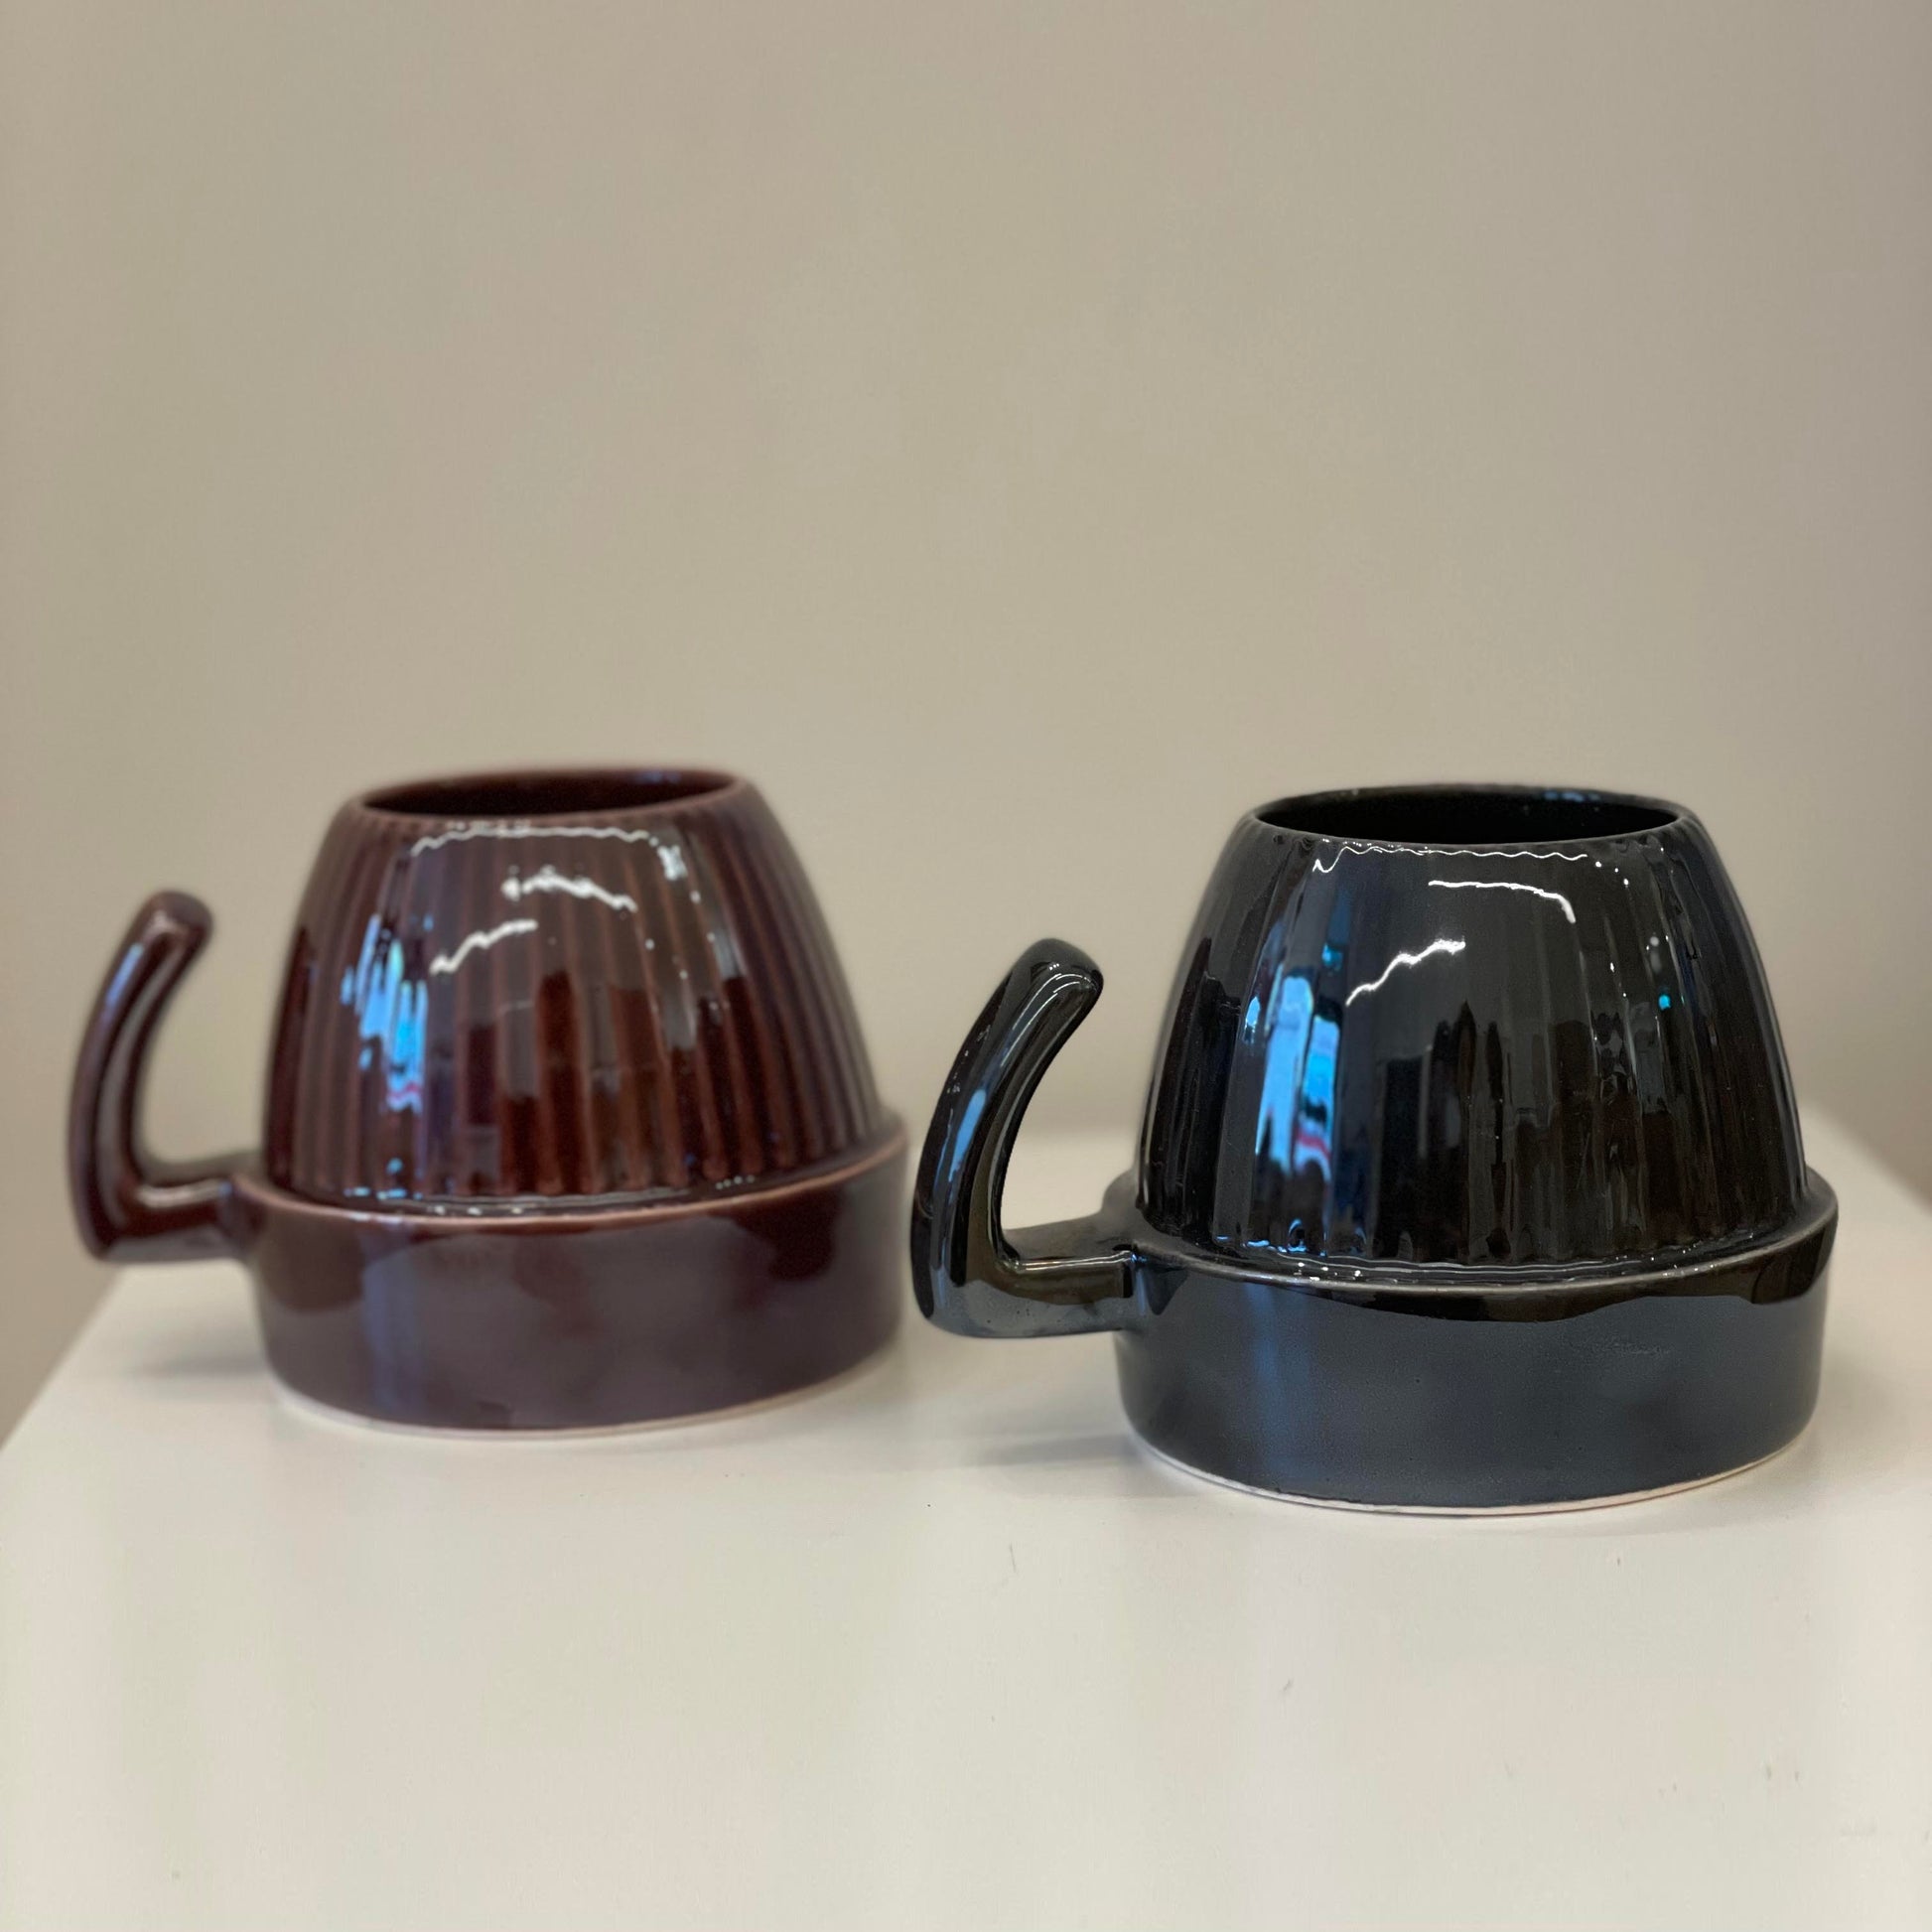 Two ceramic mugs in dark colors.